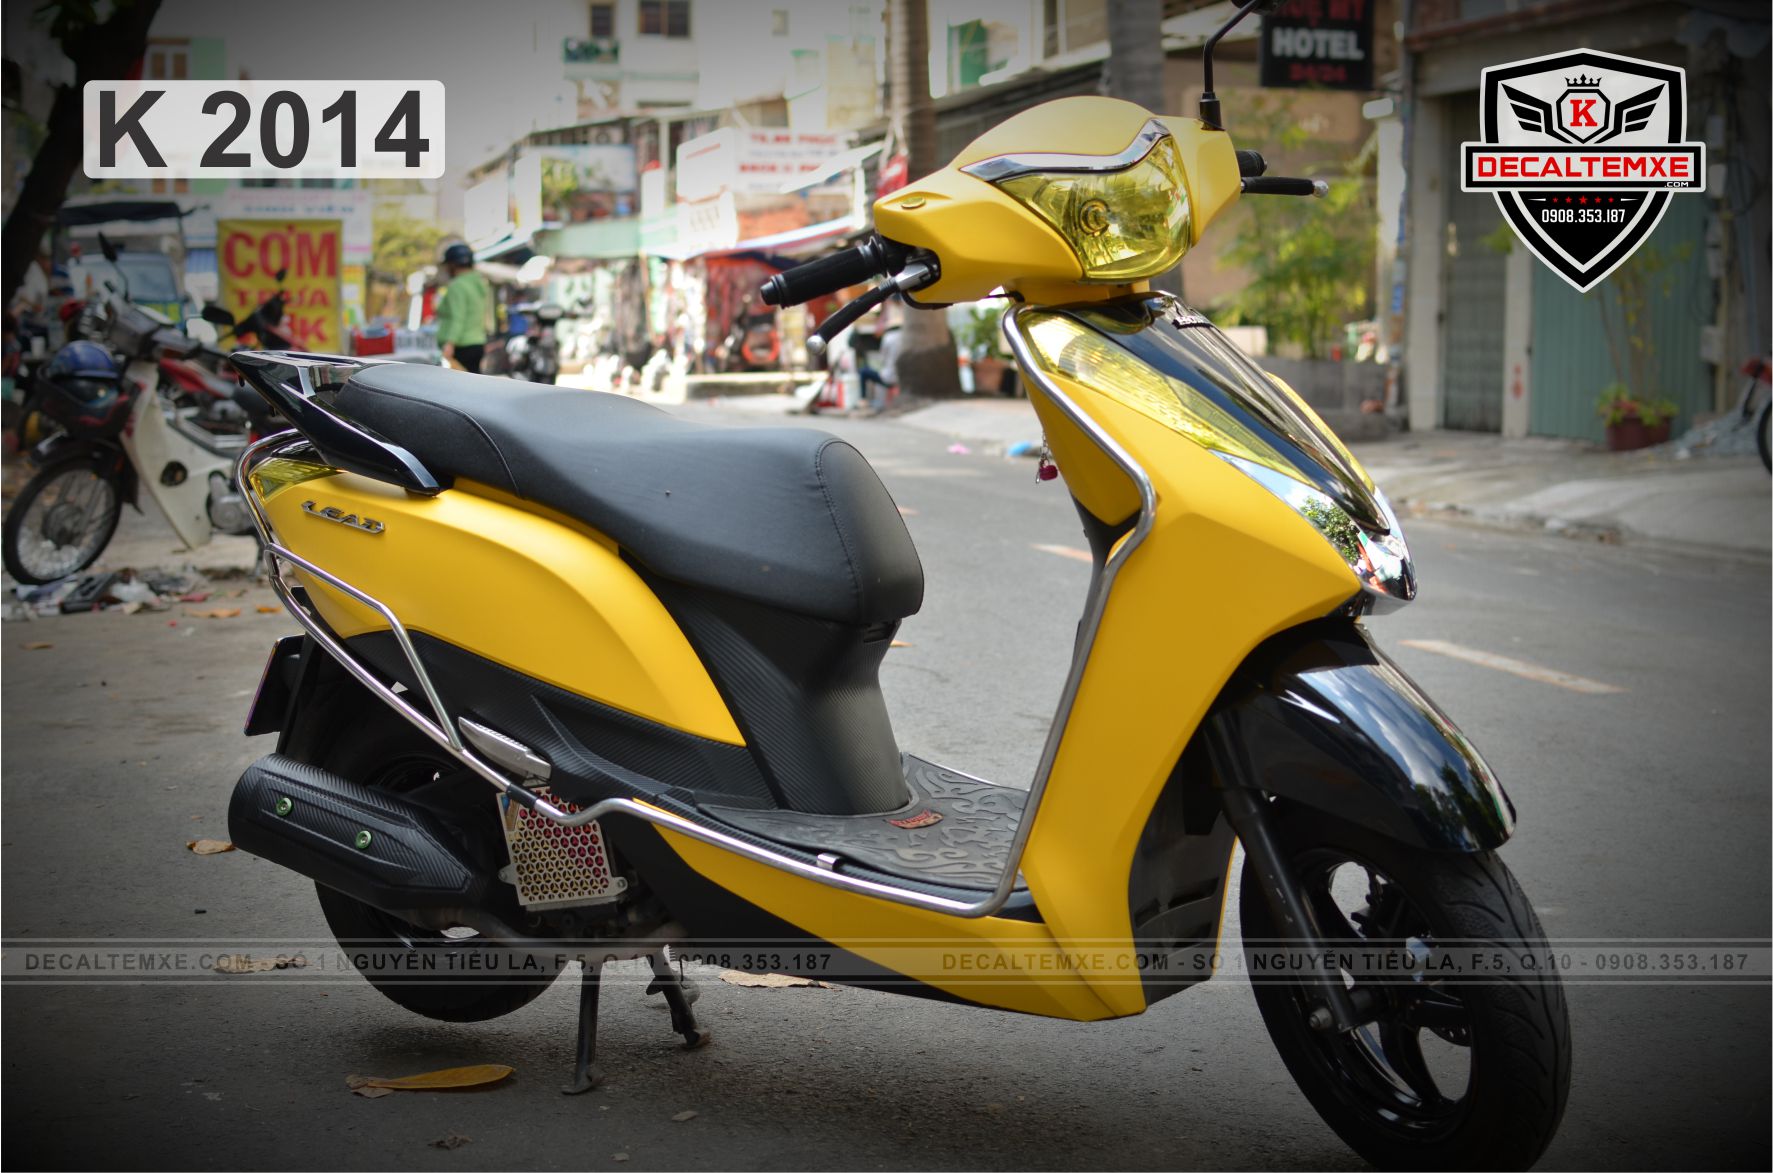 Bộ nhựa dàn áo Lead 125cc2013 Bản Cao cấp Có 4 màu Vàng nhạtXanh  tímĐenTrắng  chinhhangvn